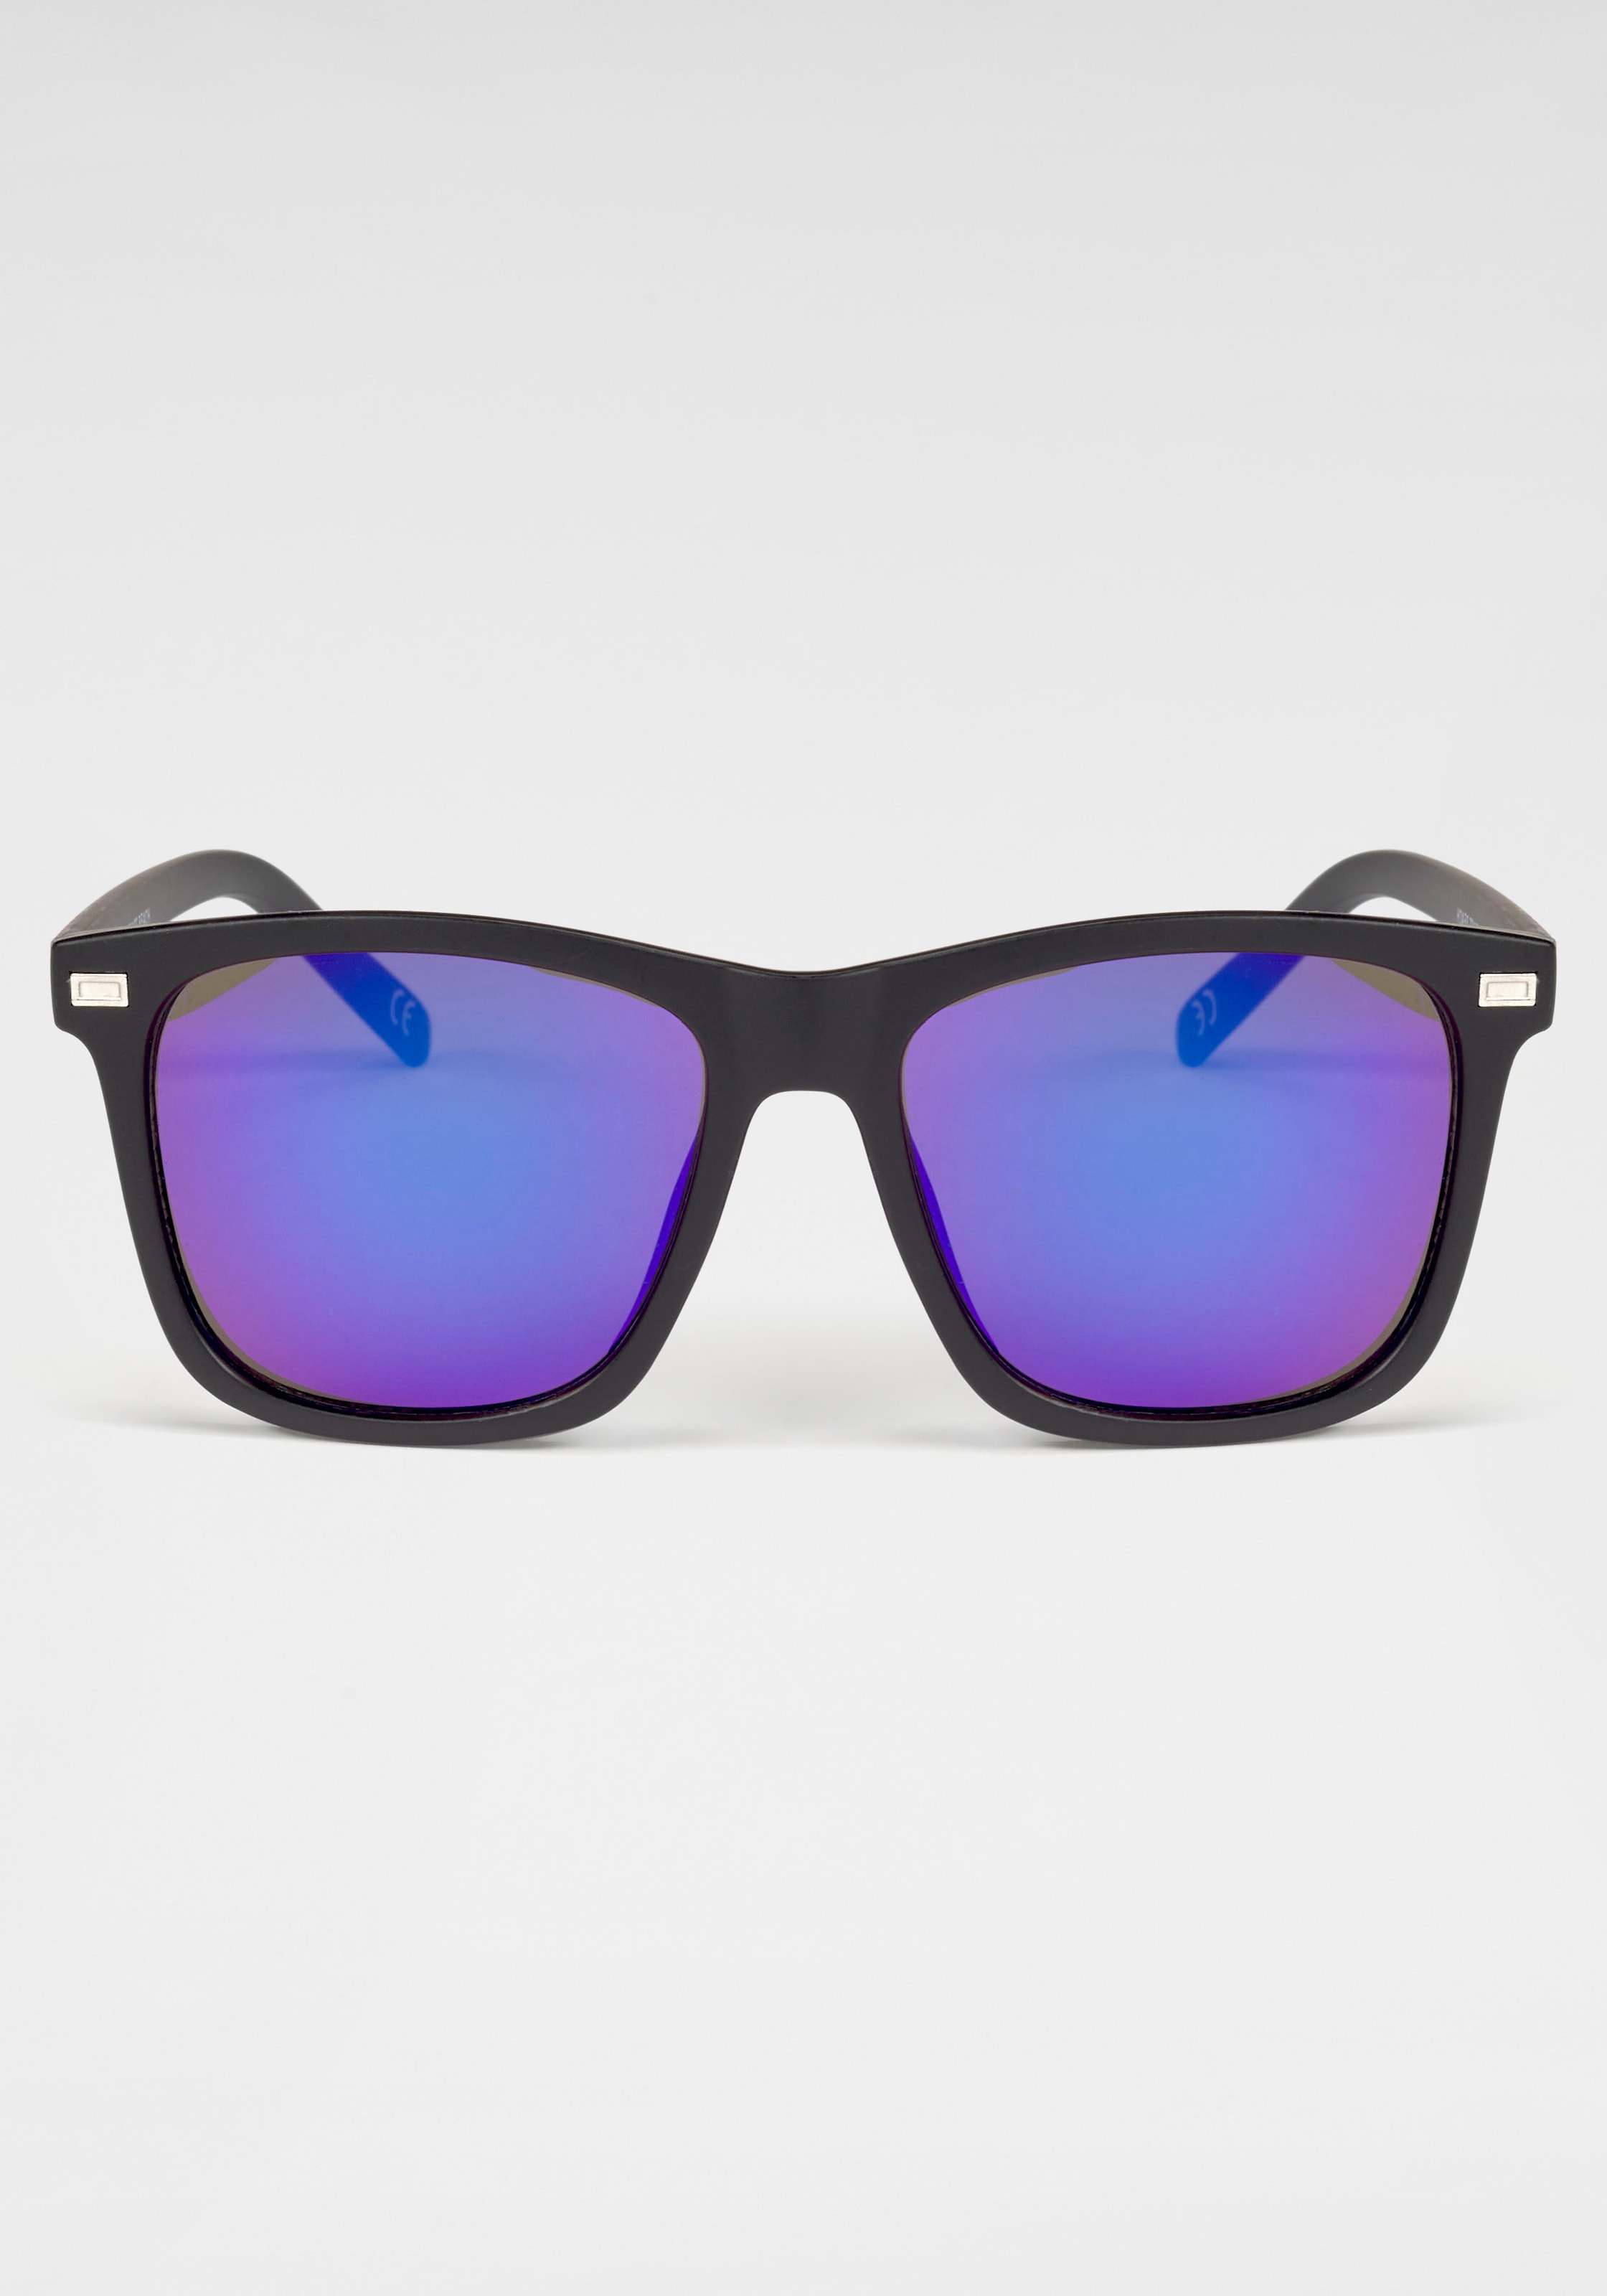 Venice Beach Sonnenbrille, Eckige Vollrandsonnenbrille aus Kunststoff